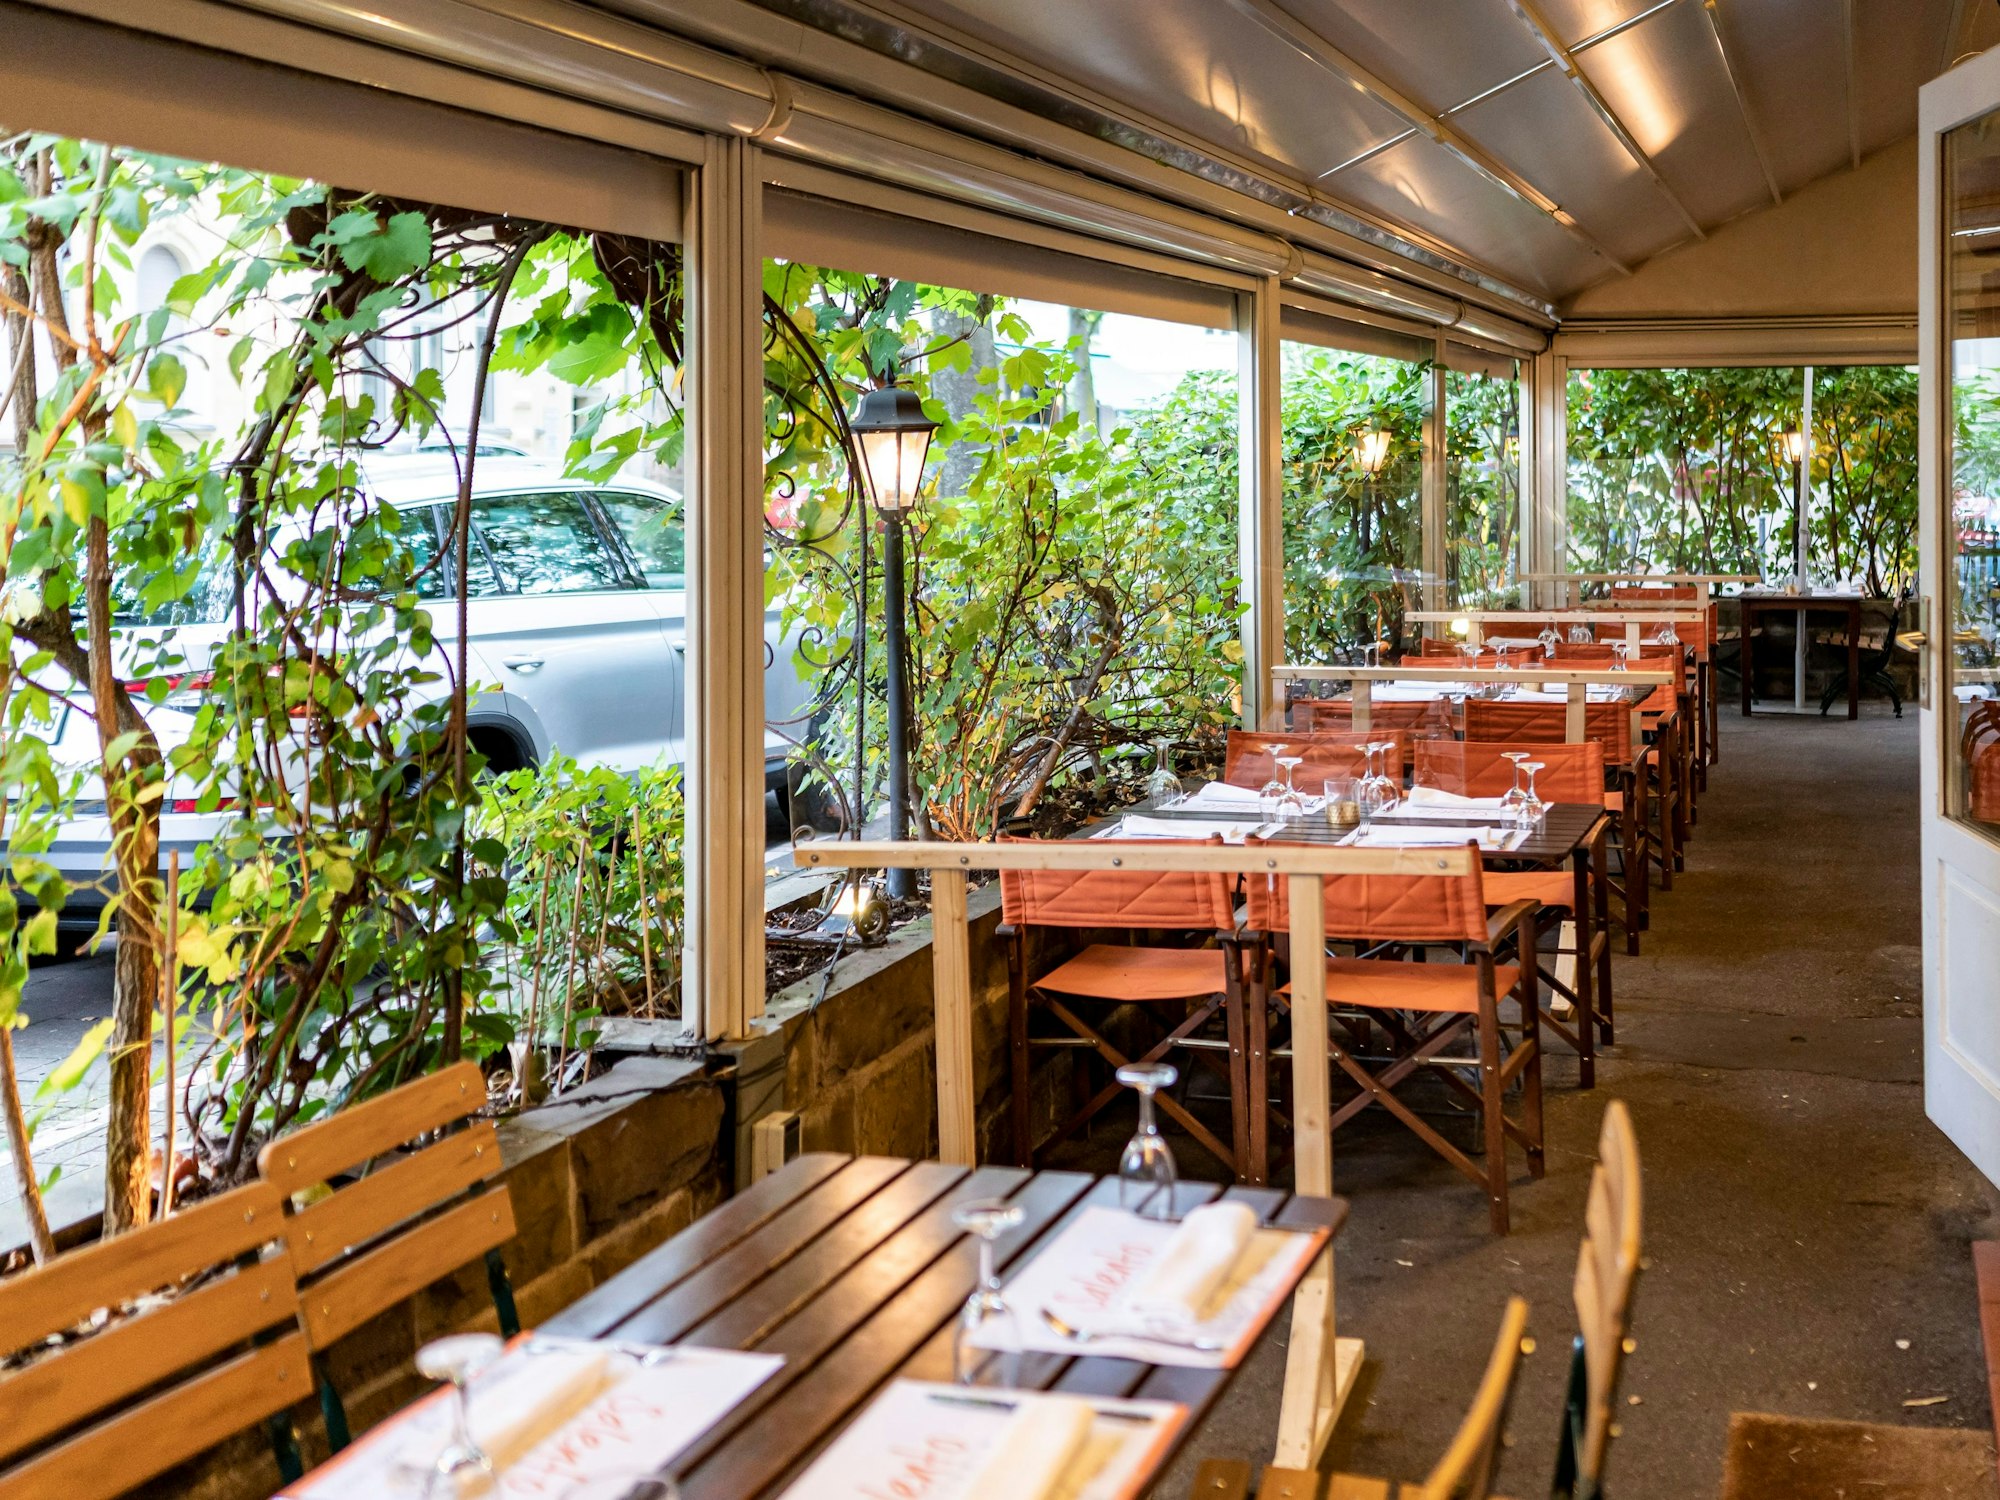 Kübel mit großen Pflanzen grenzen die Außengastronomie eines Restaurants vom Bürgersteig ab.